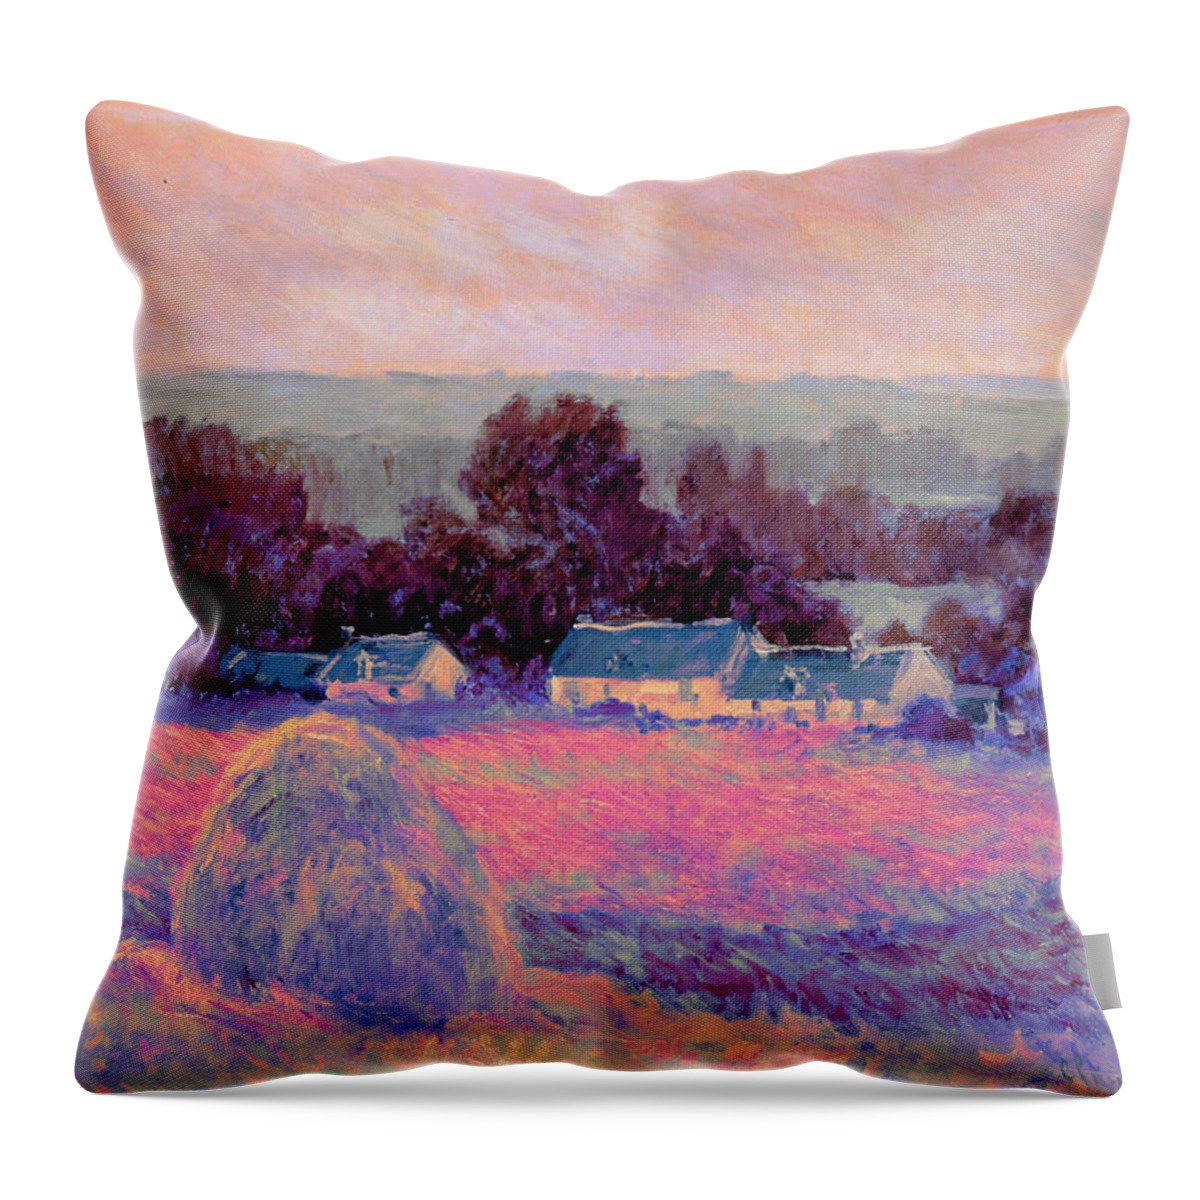 Post Modern Art Throw Pillow featuring the digital art Inv Blend 10 Monet by David Bridburg